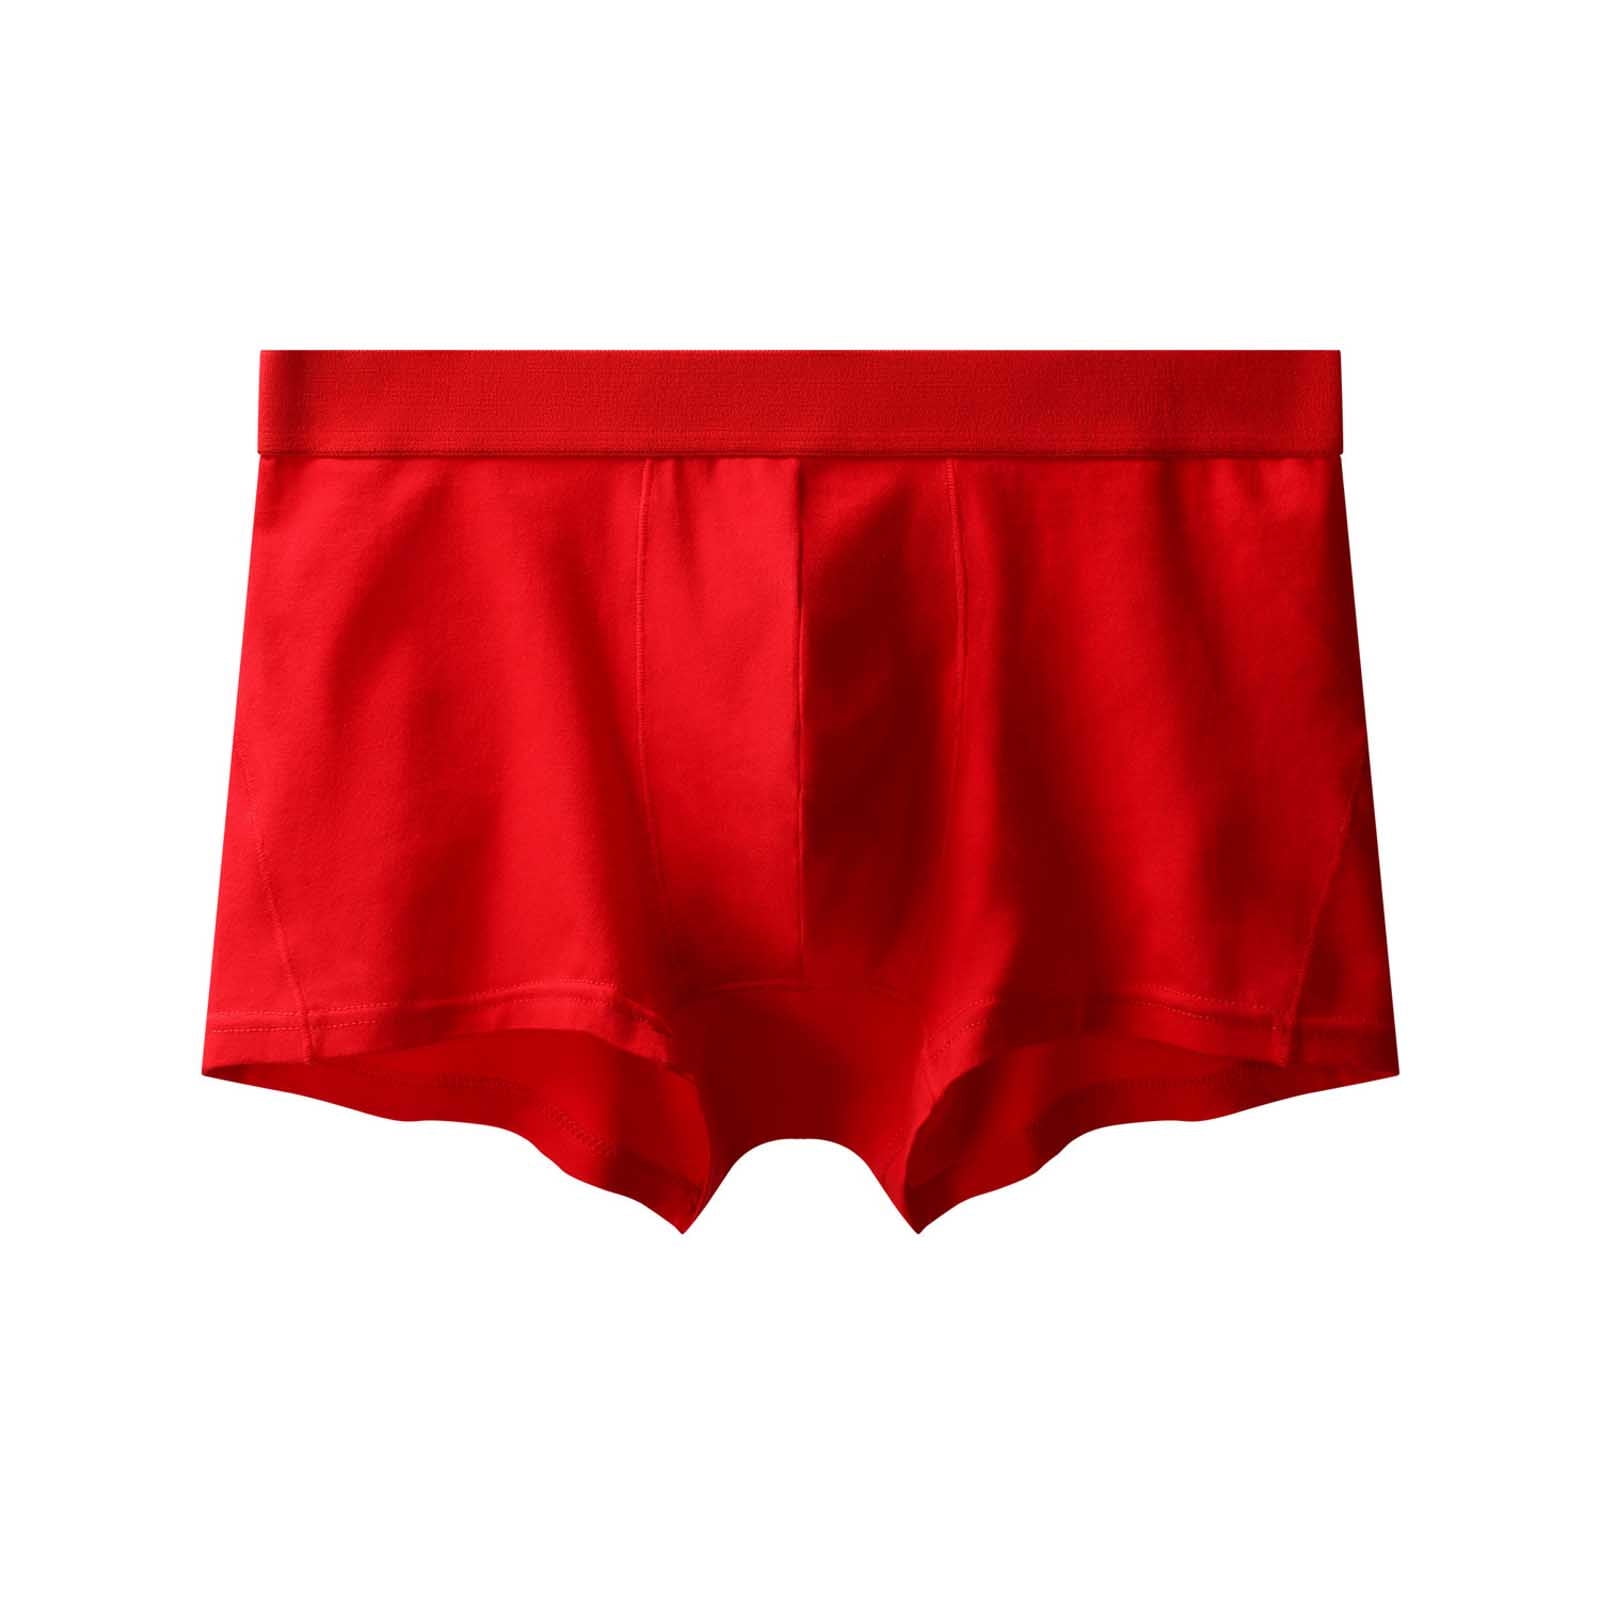 Men's Underwear Briefs's Underwear Sexy Knitting Boxer Shorts Underwear ...